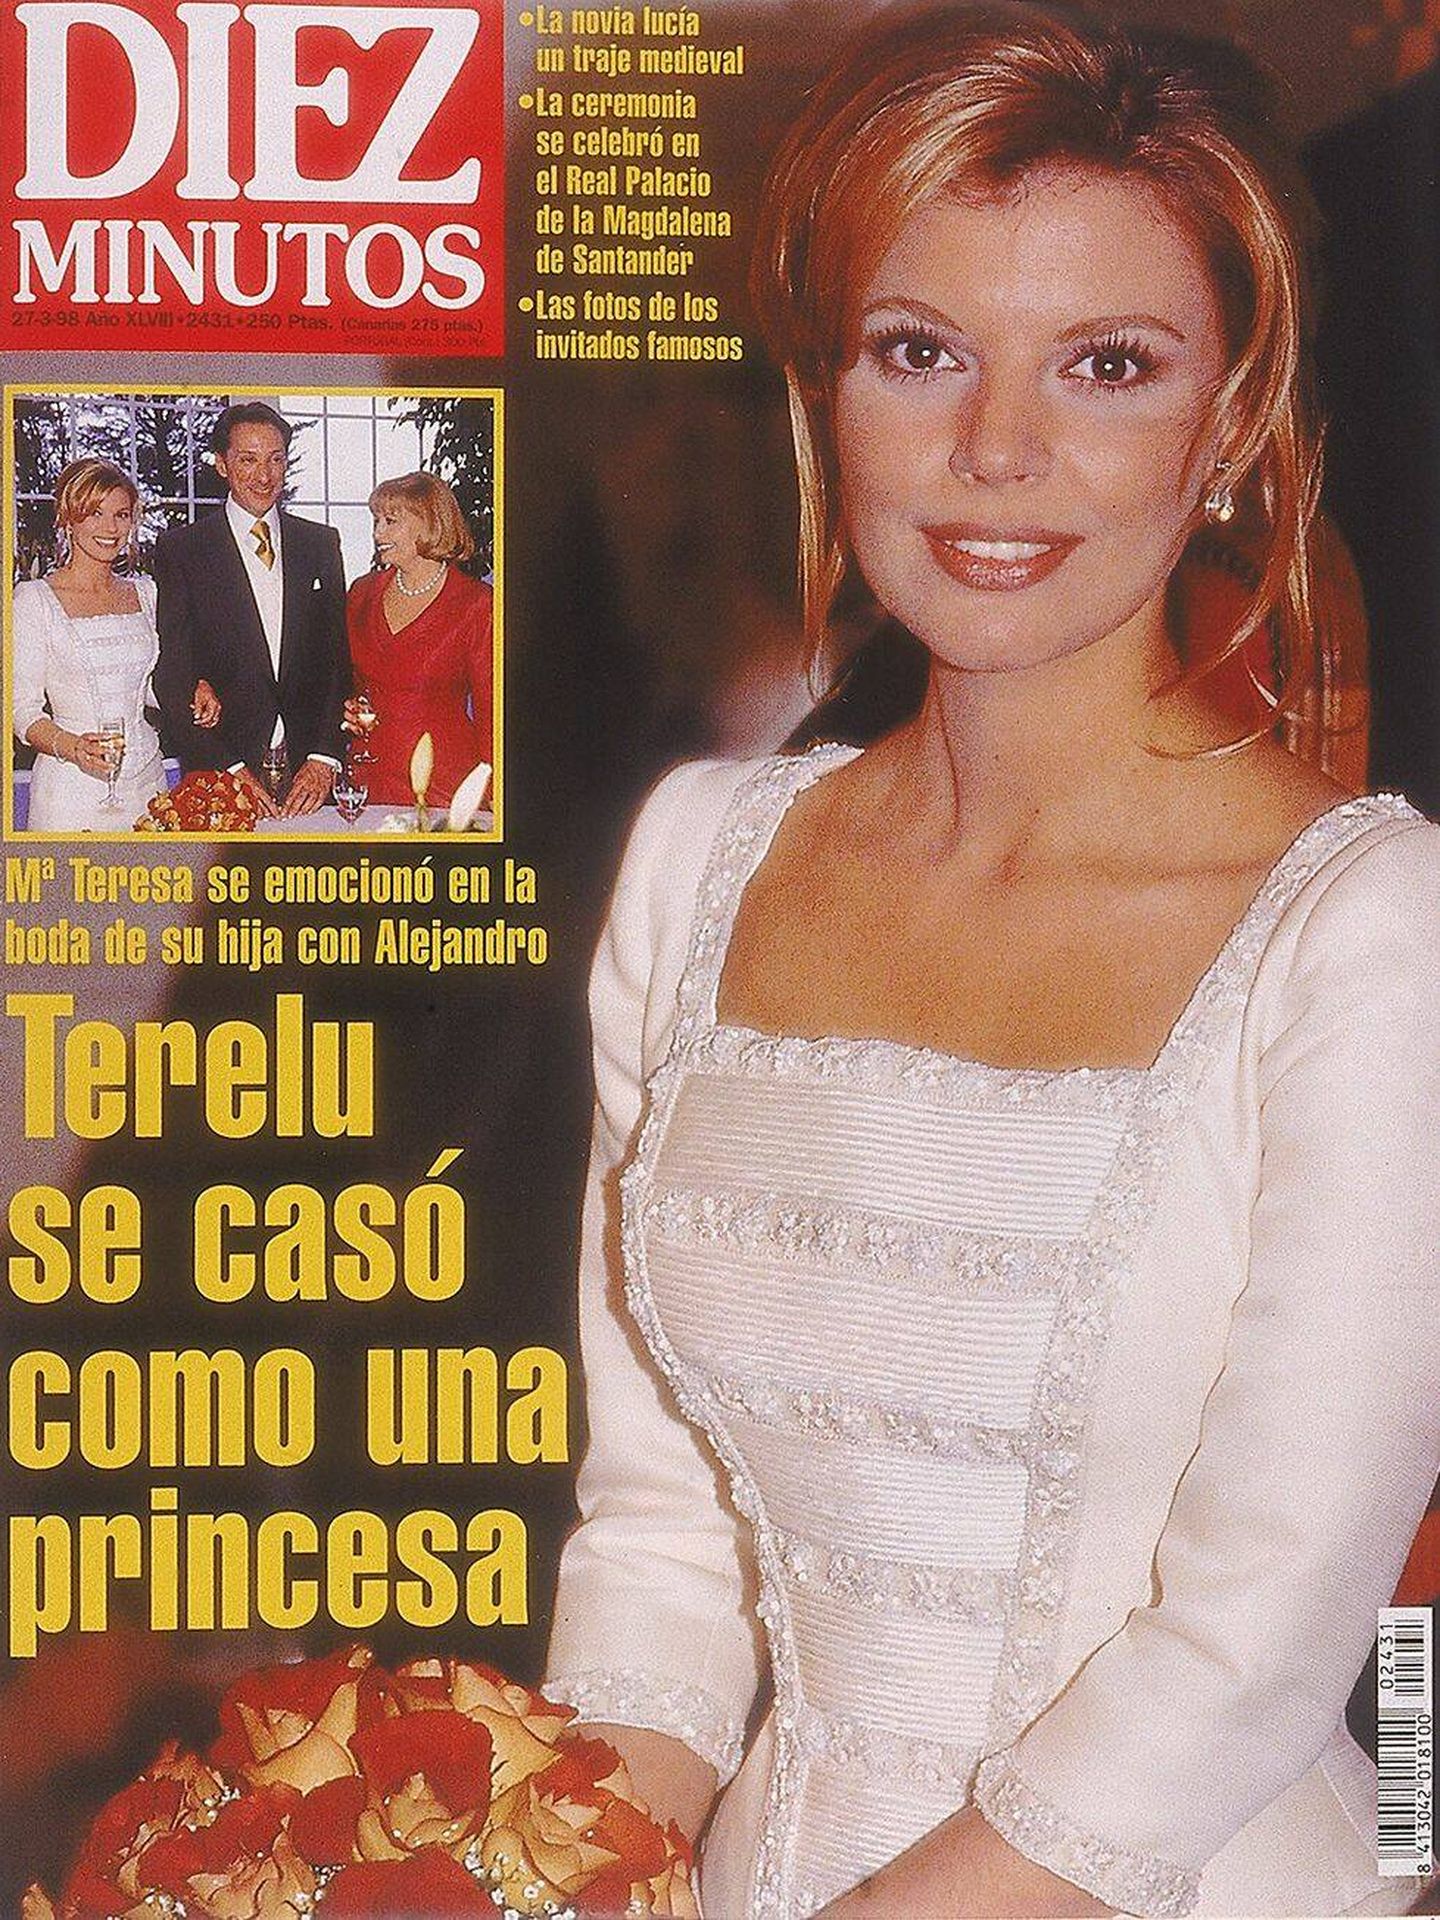 Portada de 'Diez Minutos' con la boda de Terelu Campos y Alejandro Rubio.